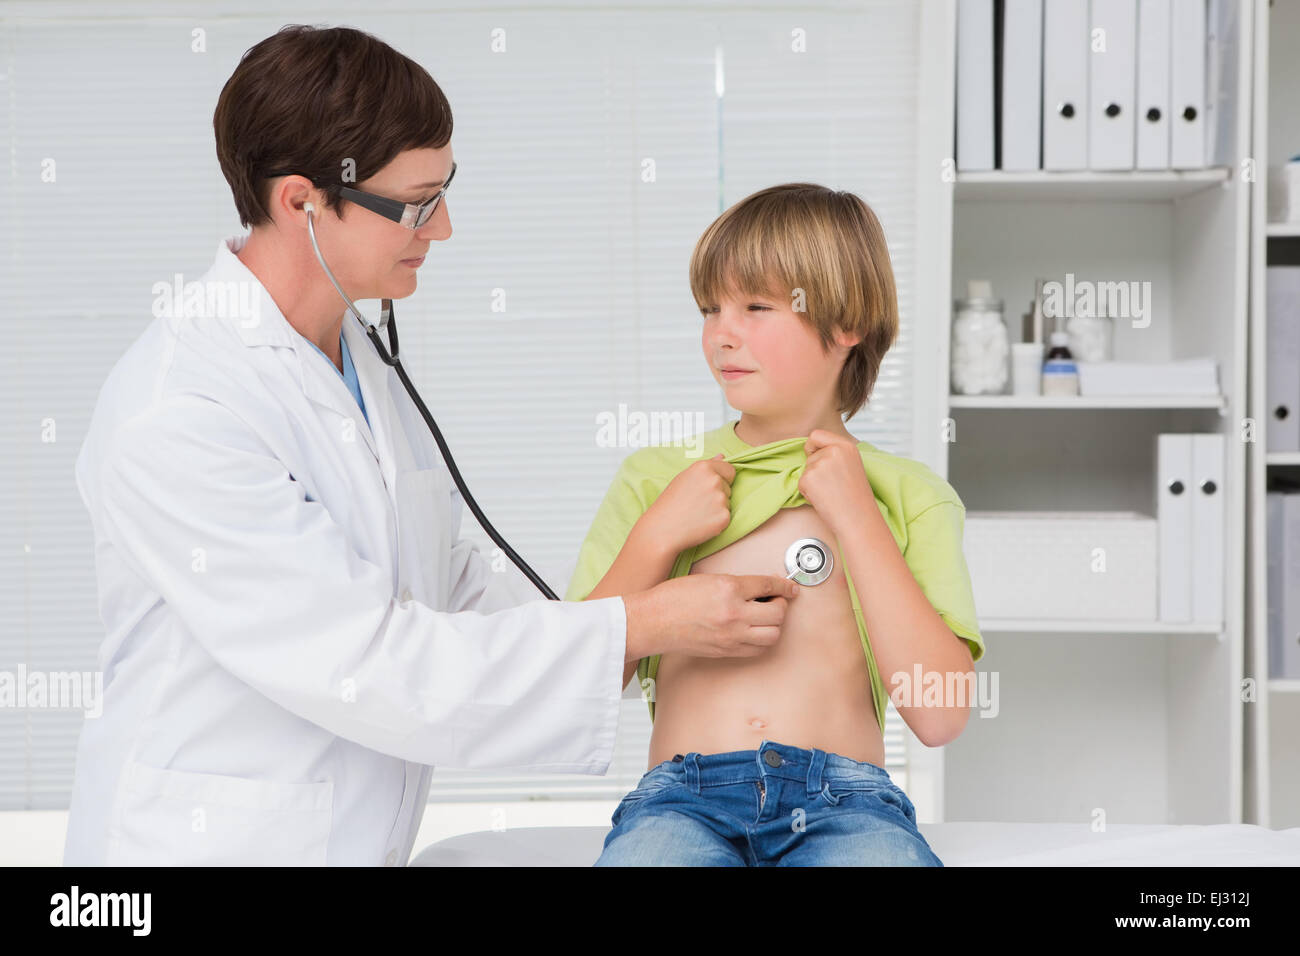 Мальчик на приеме у врача. Врач осматривает мальчика. Мальчик у врача. Врач осматривает ребенка. Медосмотр стетоскопом.